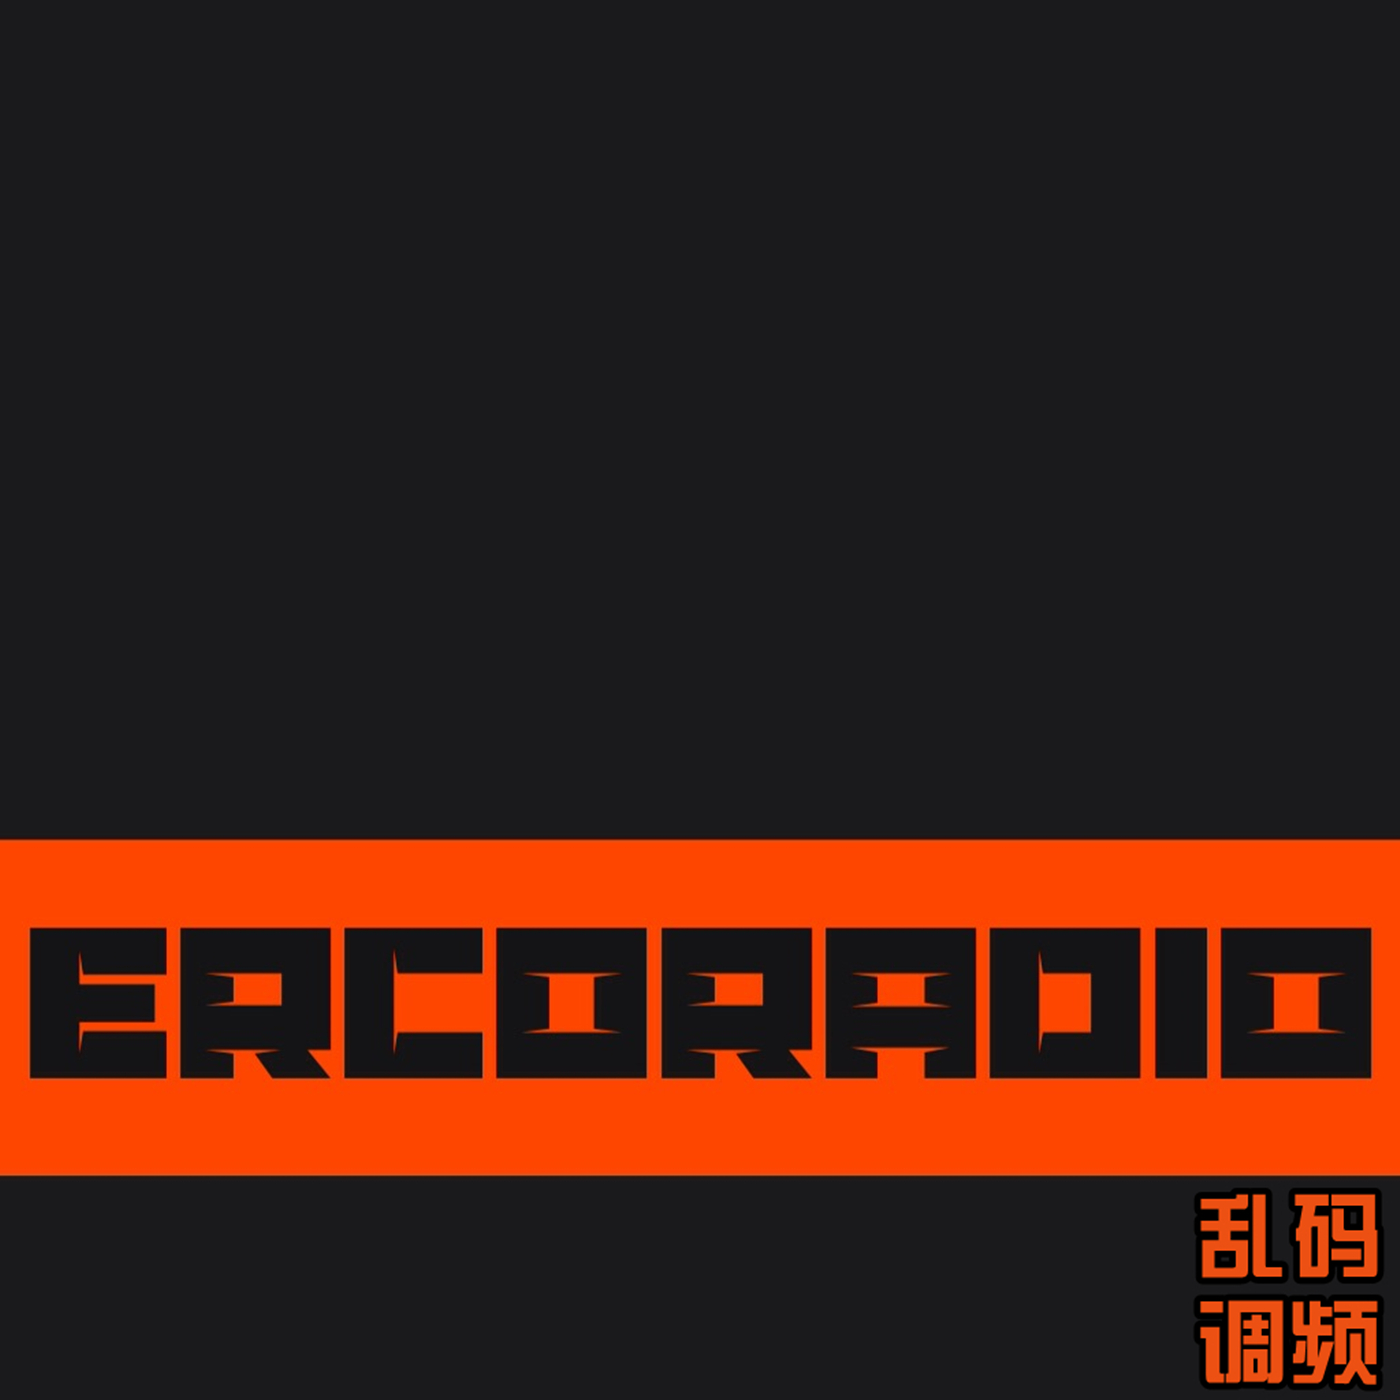 乱码调频ErcoRadio